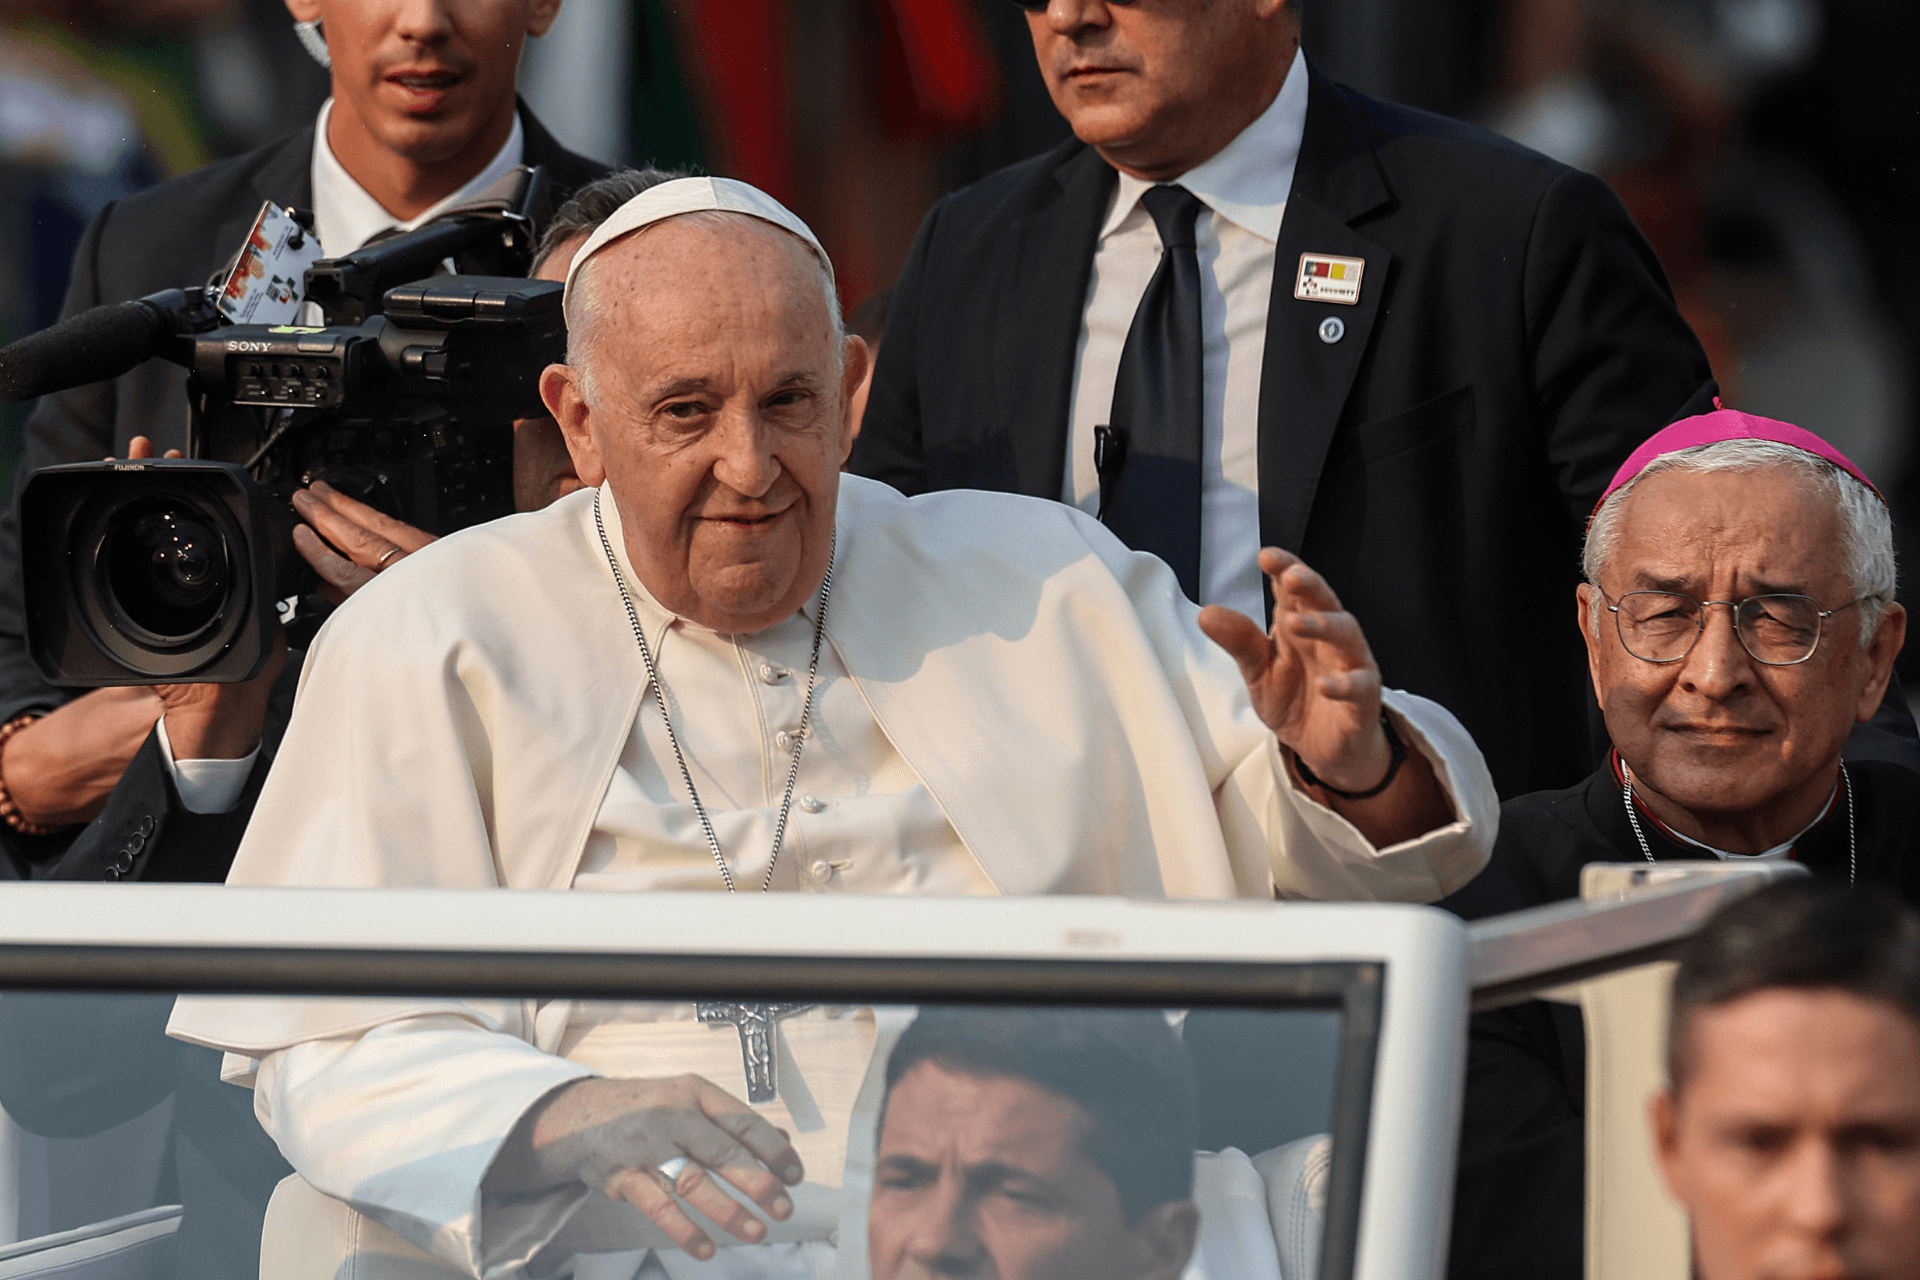 Imagen destacada del artículo: Discurso del Papa Francisco en Fátima 